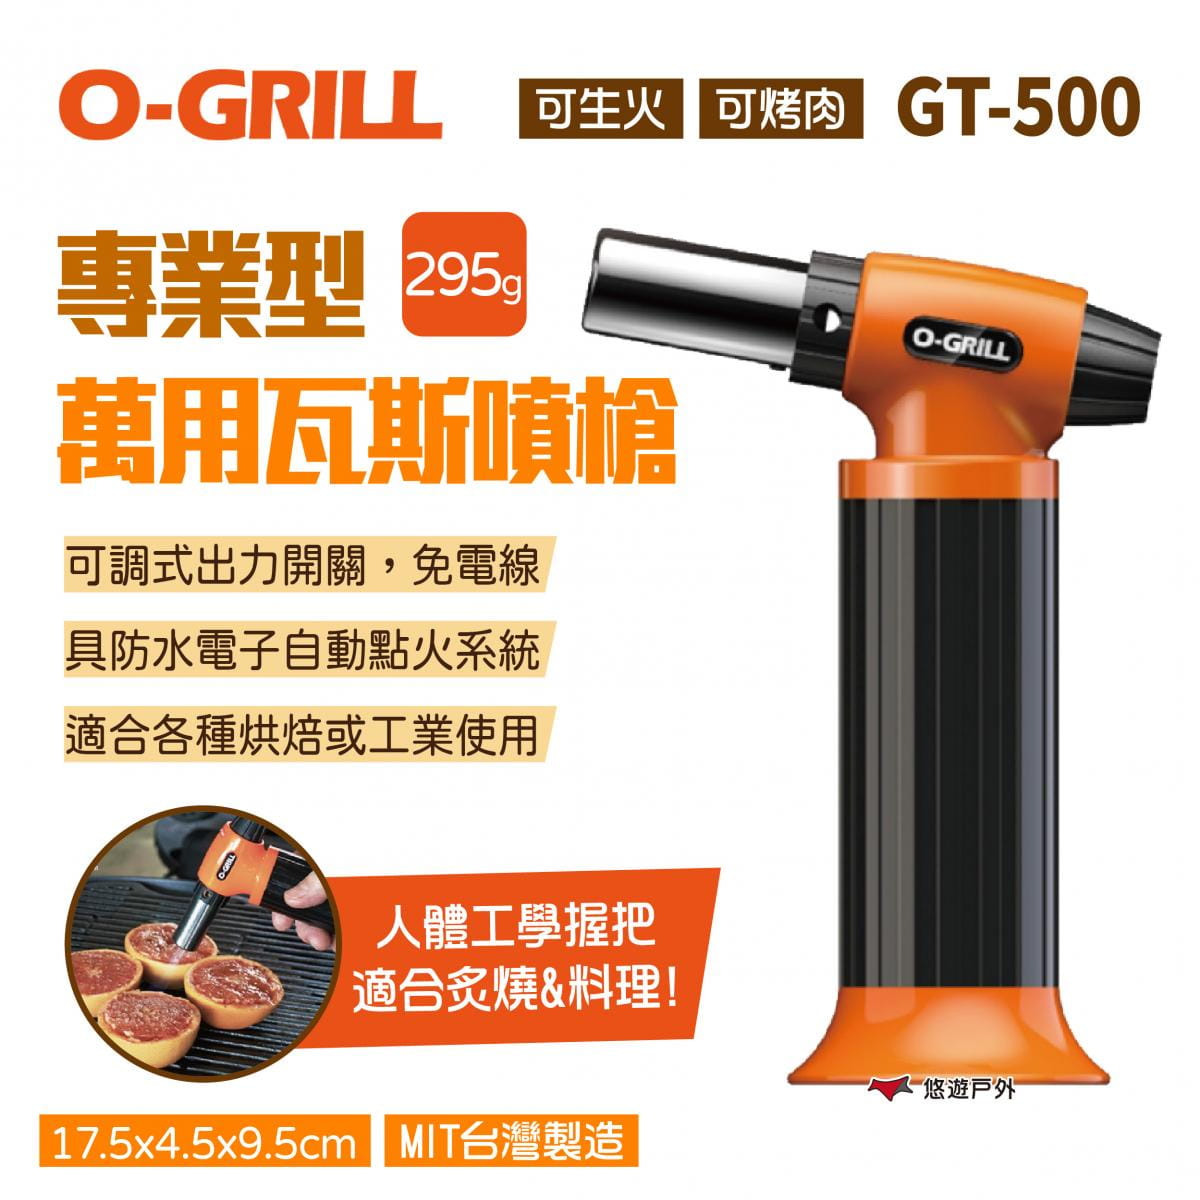 【O-GRILL】專業型萬用瓦斯噴槍 GT-500 (悠遊戶外) 0